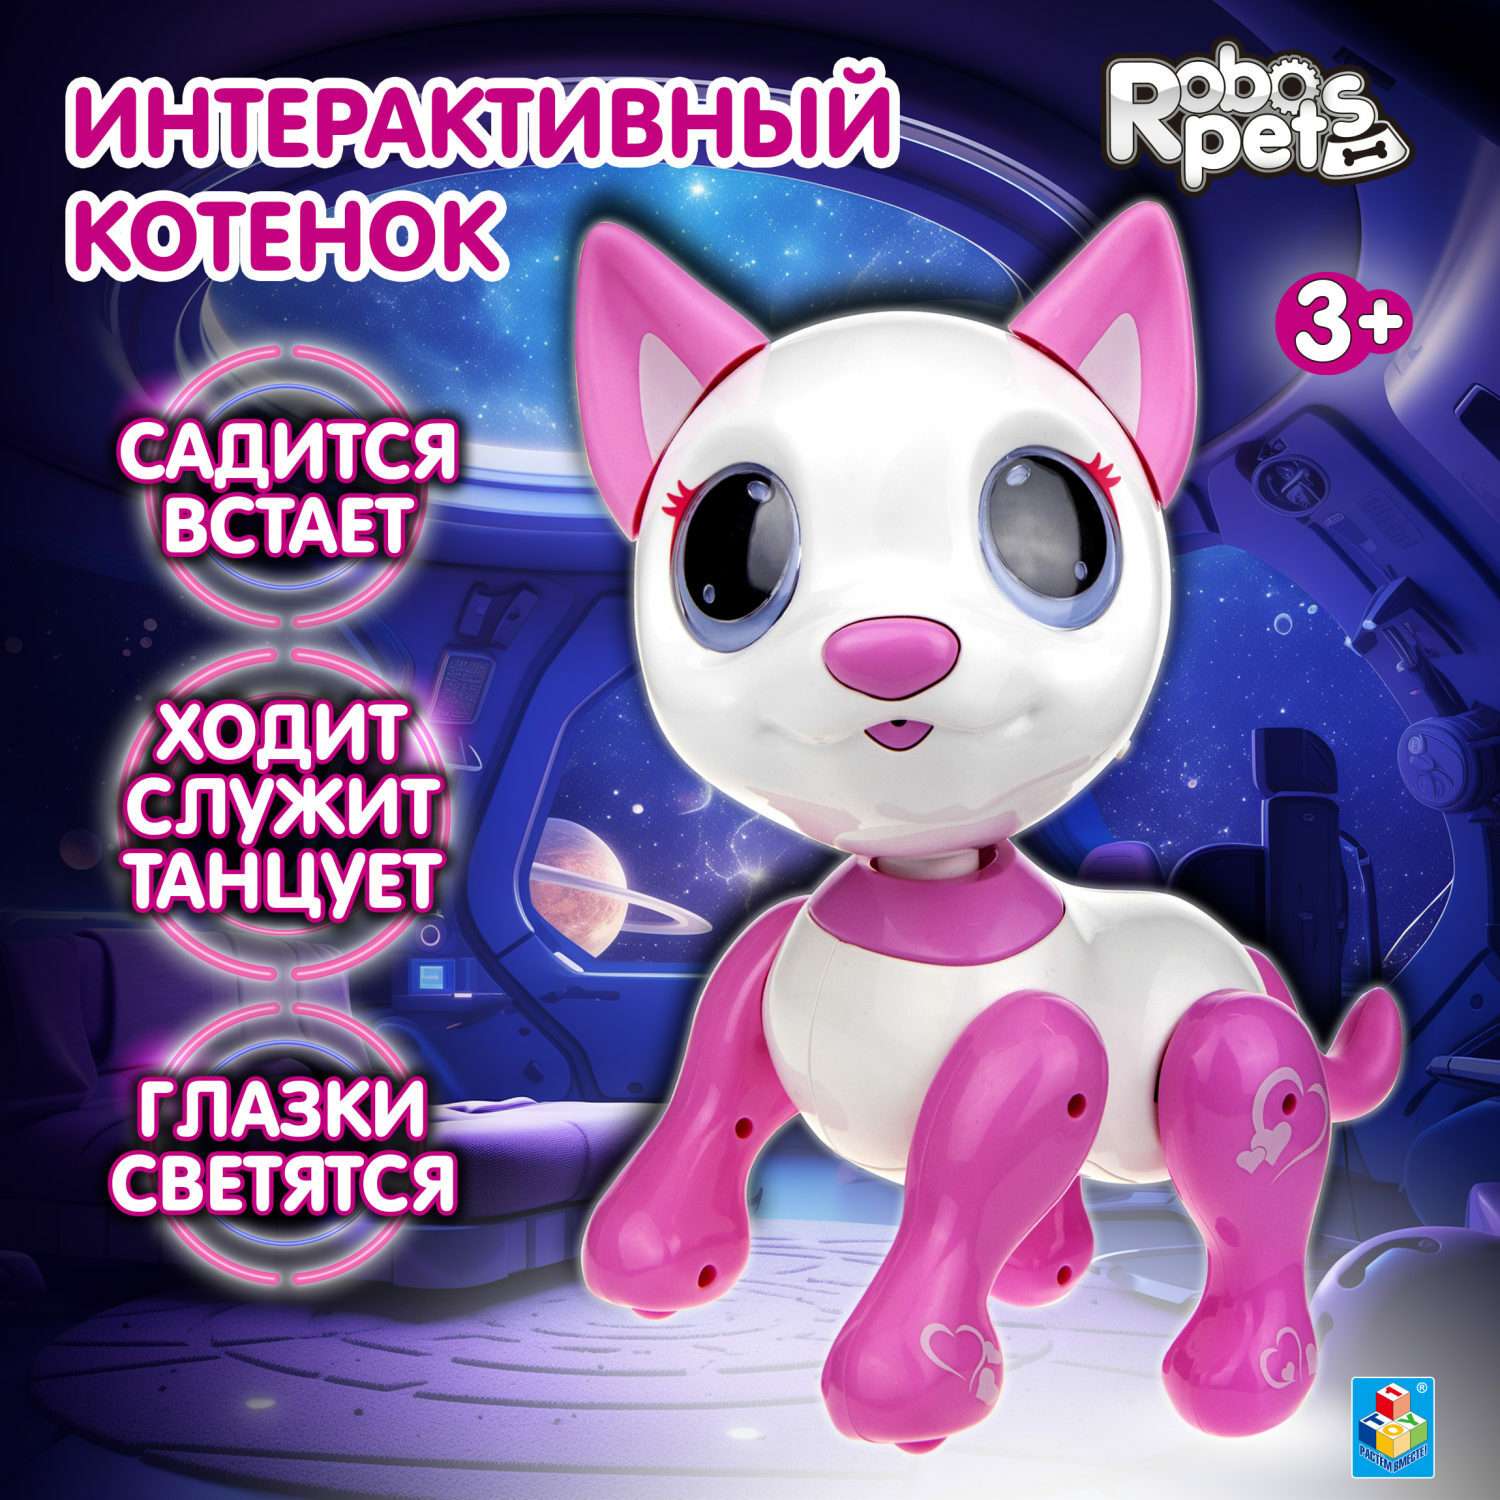 Интерактивная игрушка Robo Pets Робо-котёнок белый/розовый - фото 1